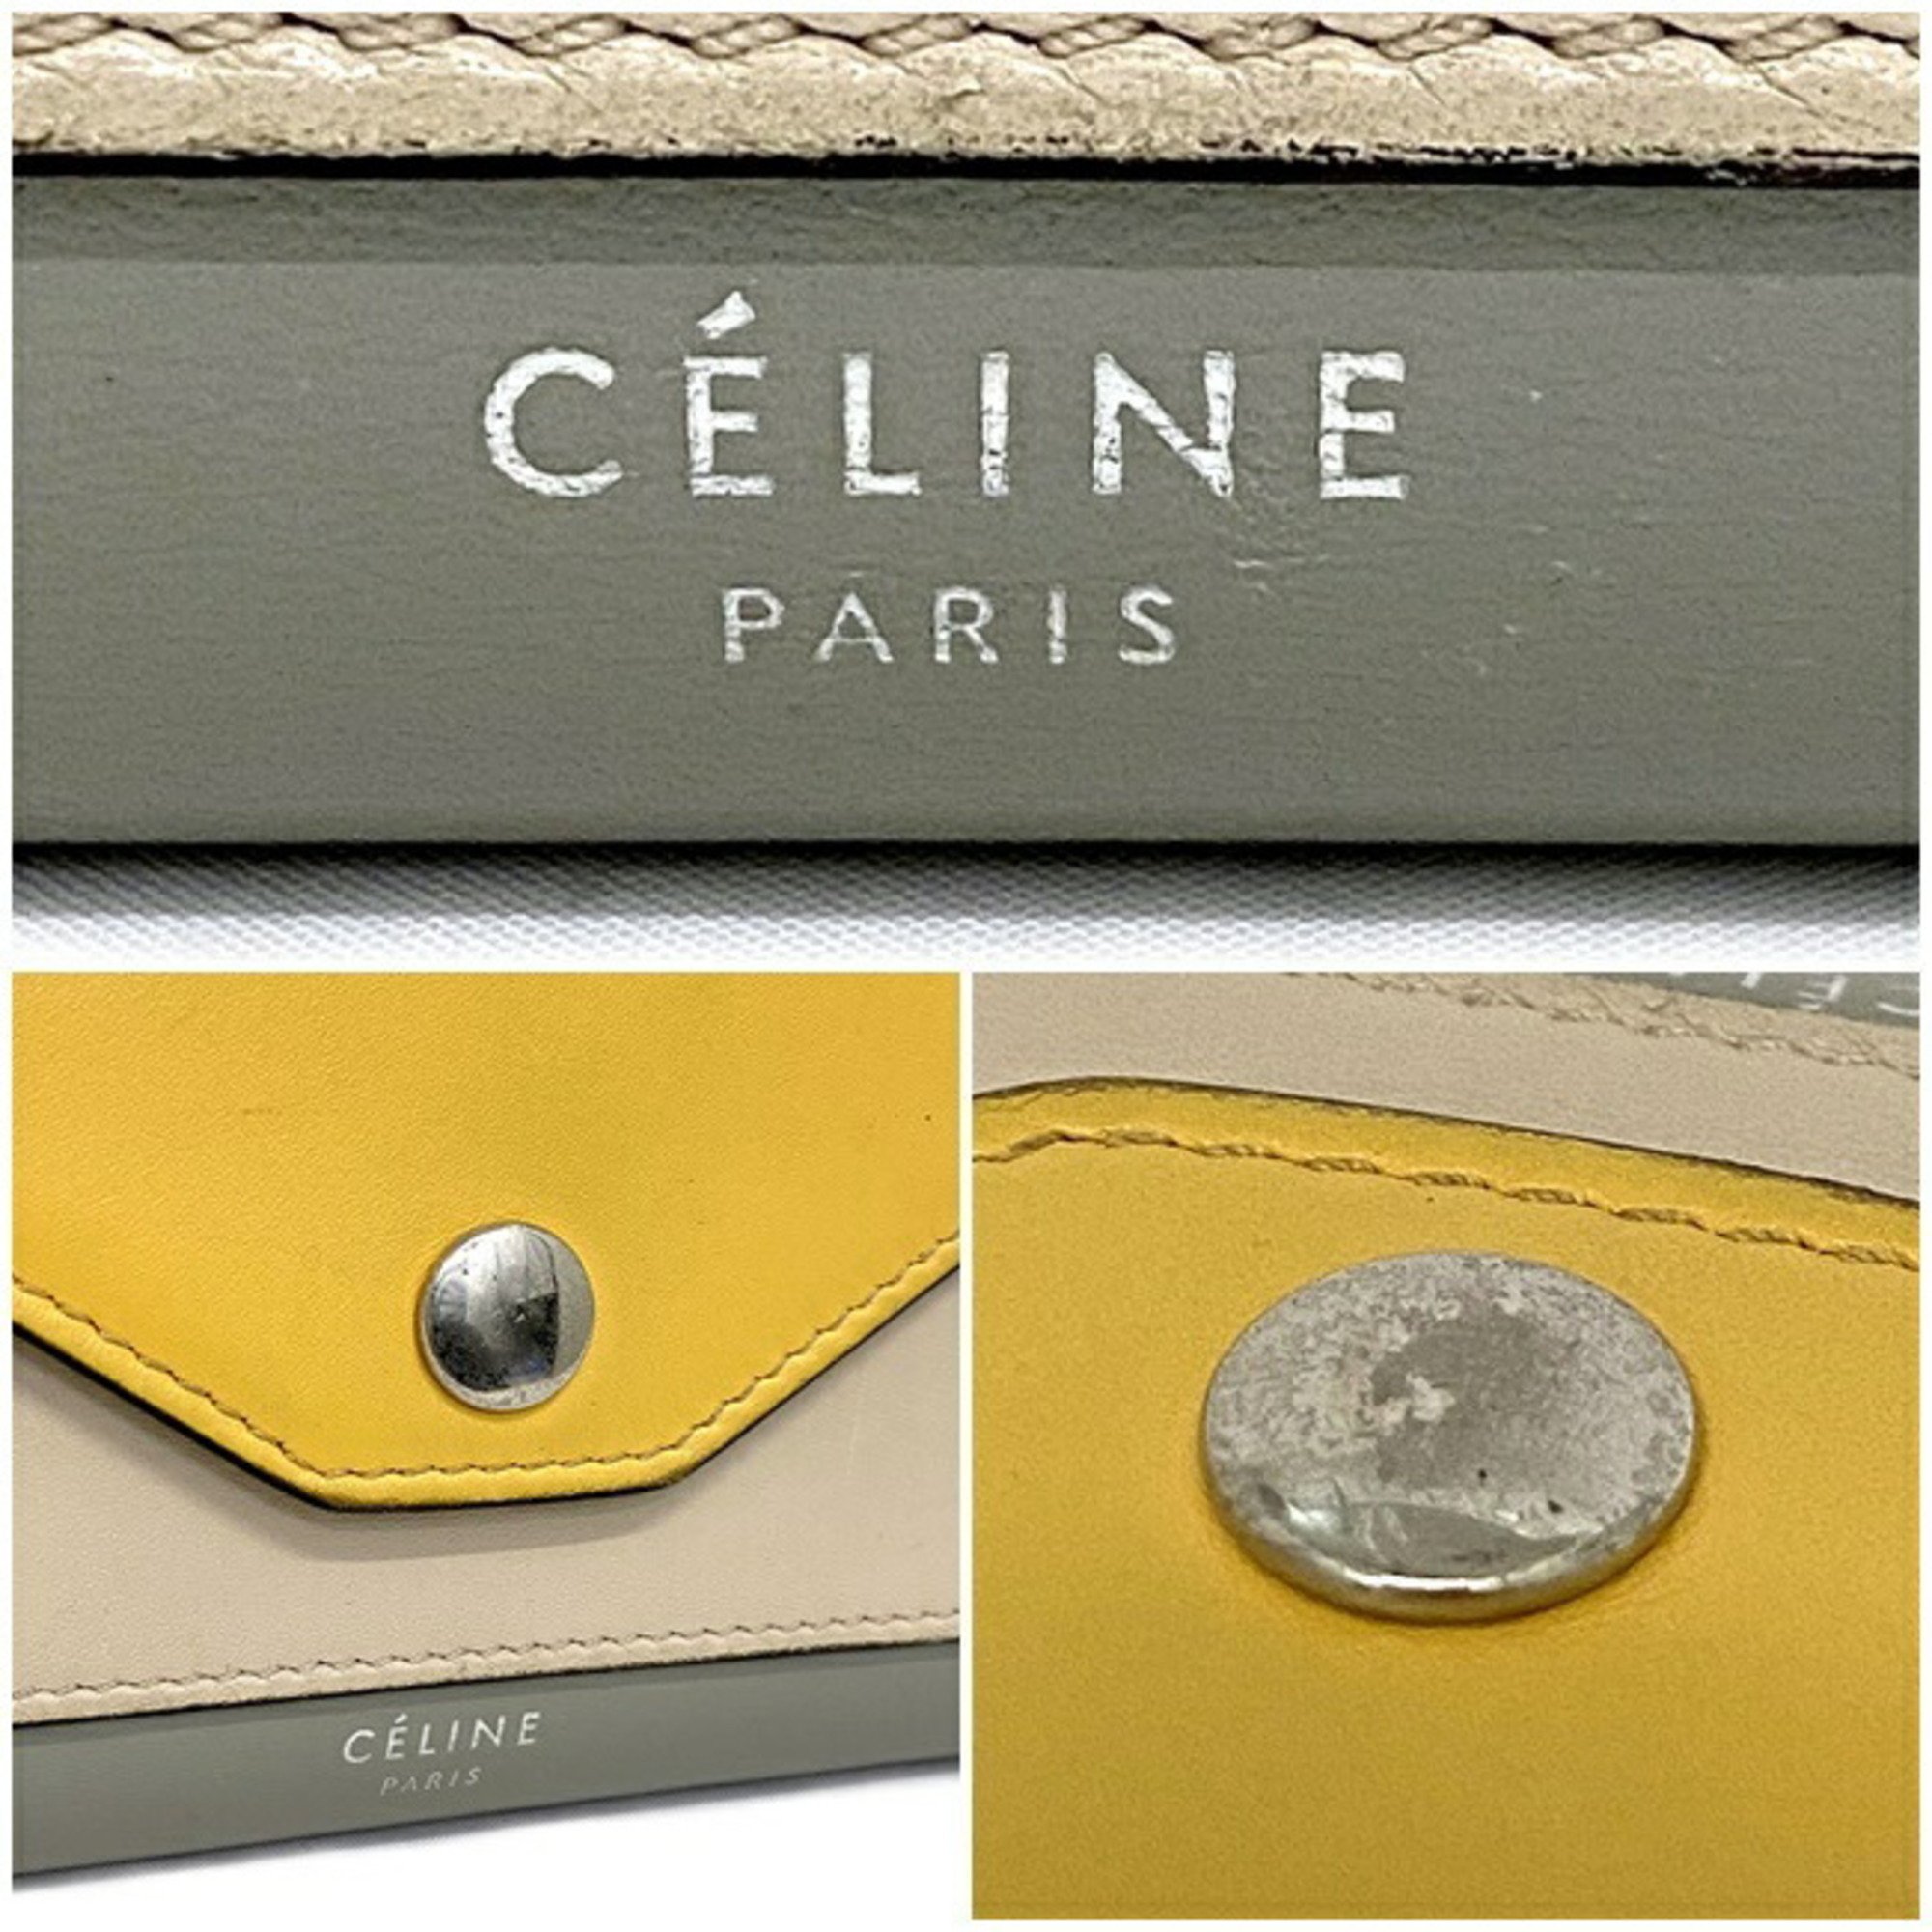 Celine Tri-Fold Wallet Trifold Multifunction Yellow Gray Beige 105853 Leather CELINE Calfskin Women's Genuine